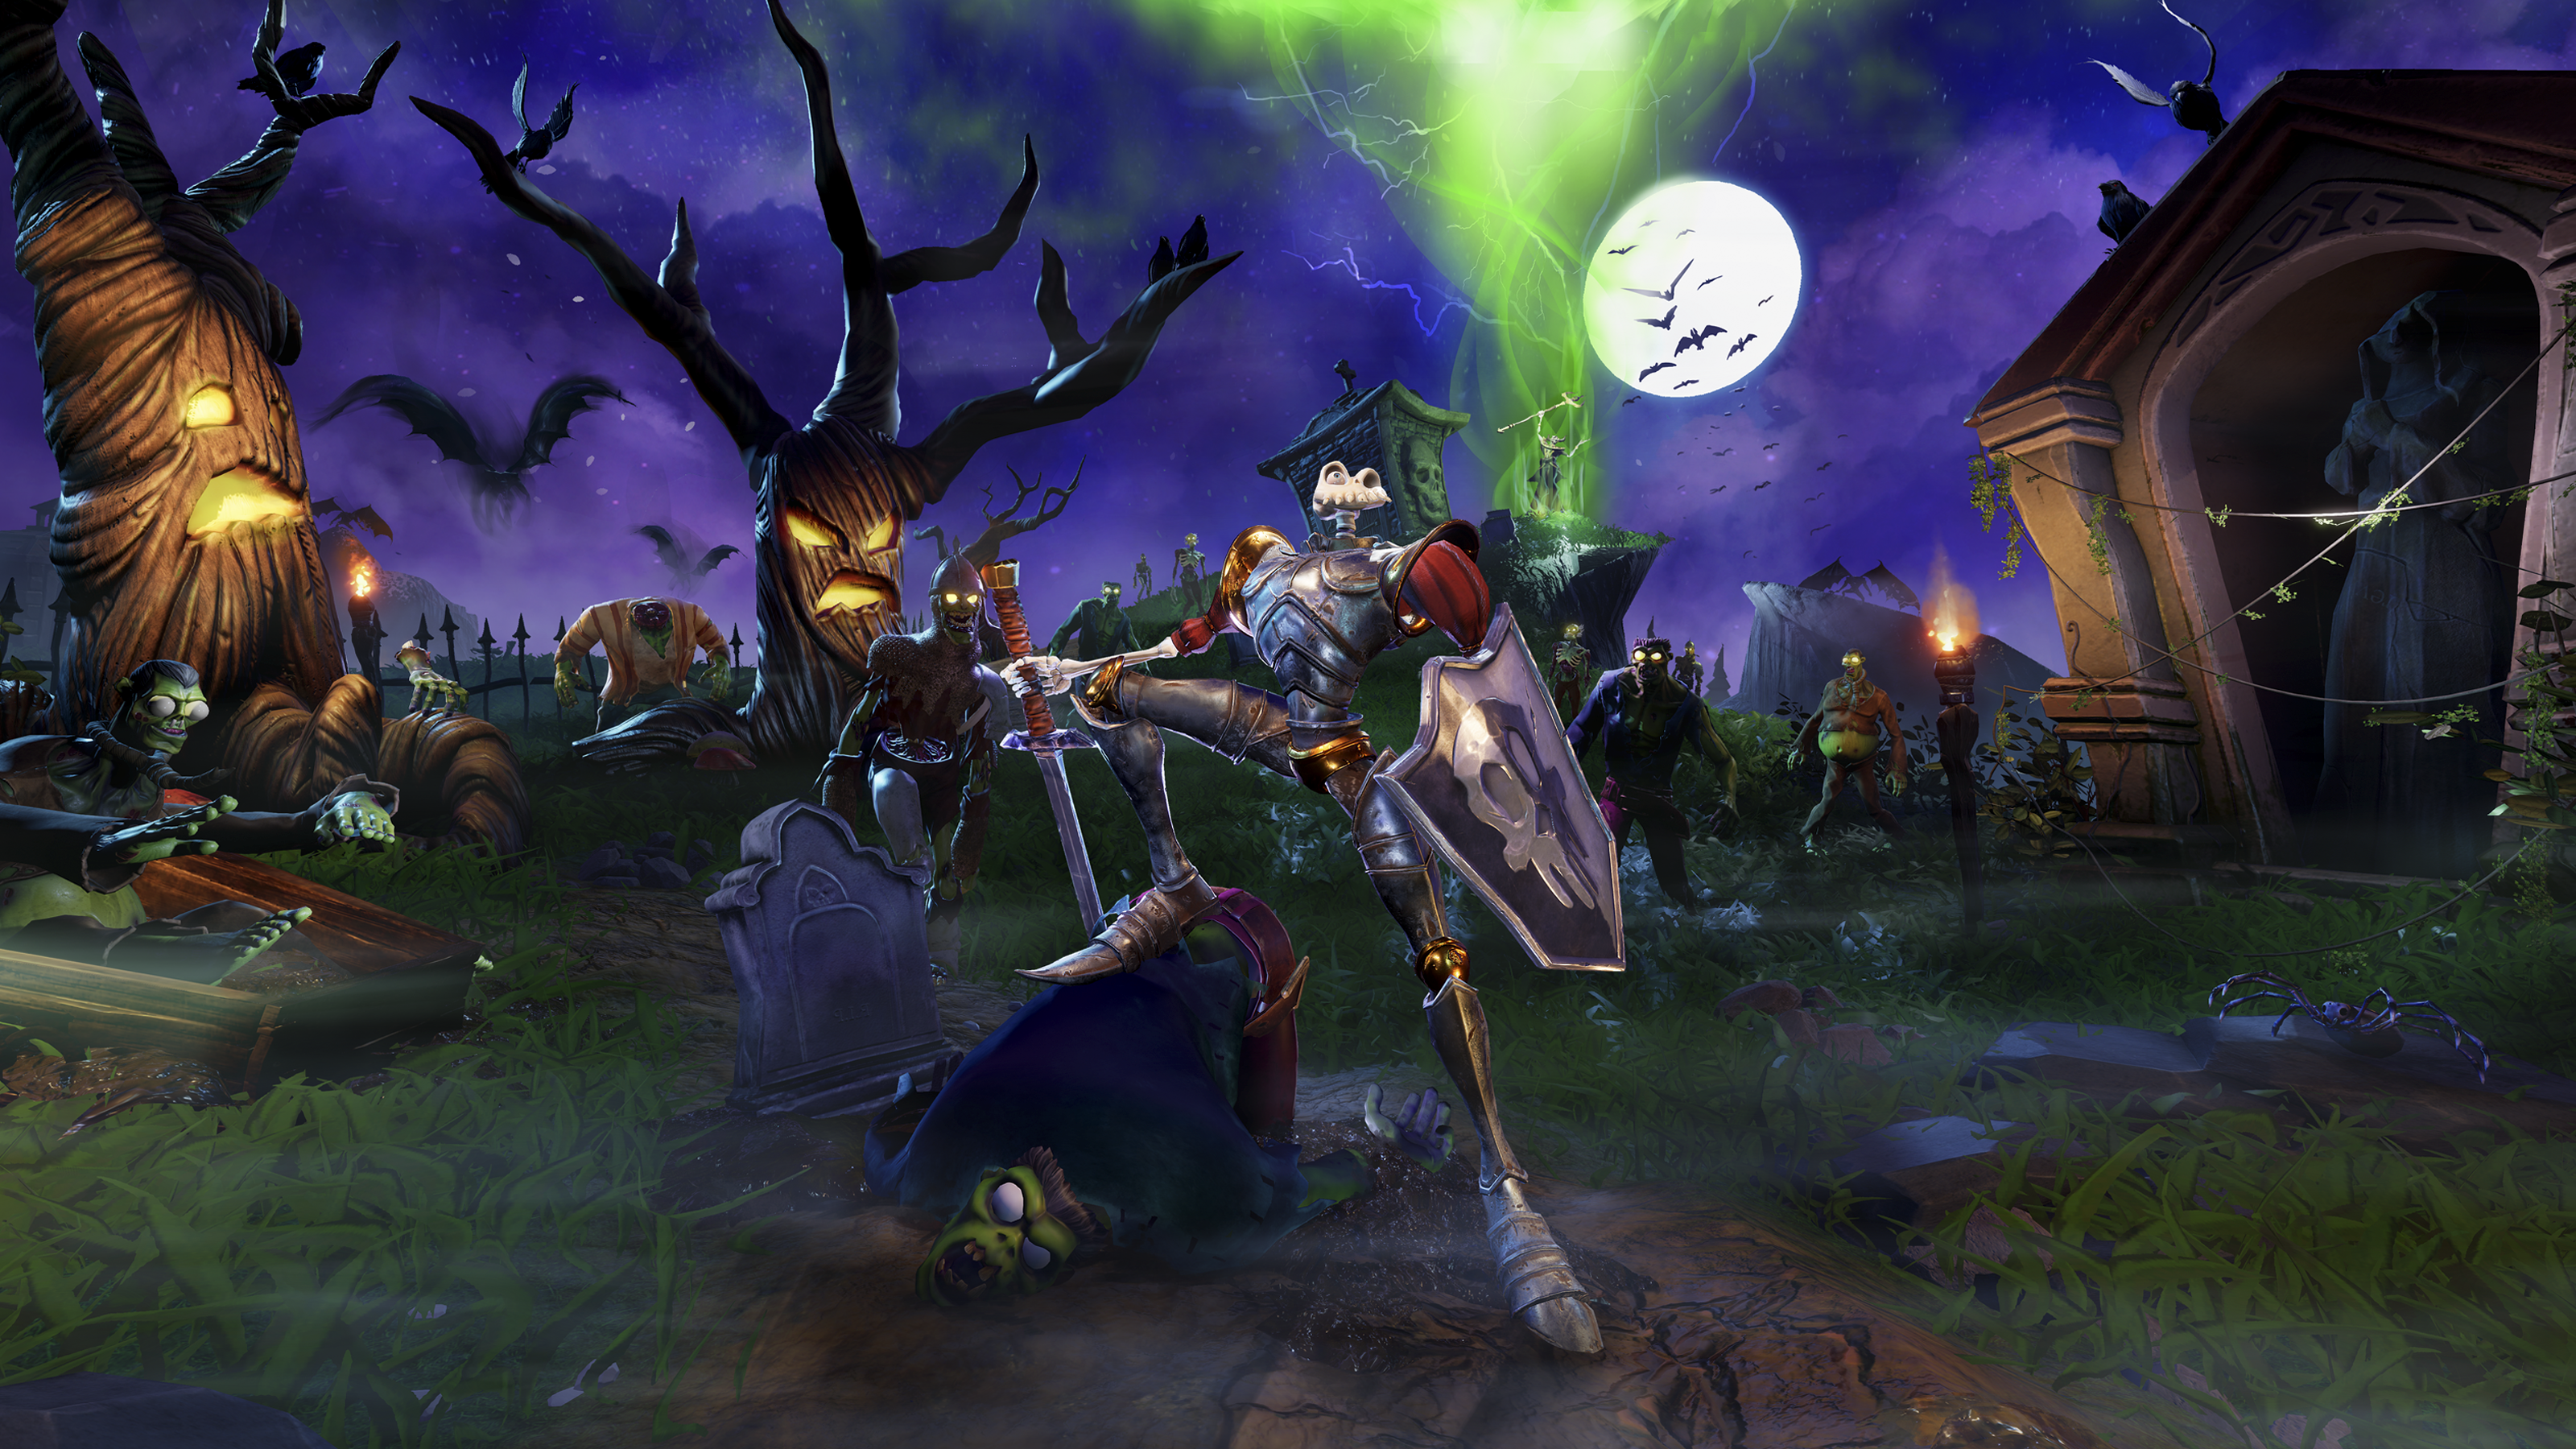 صورة فنية أساسية من لعبة MediEvil تعرض الشخصية الرئيسية، Sir Daniel Fortesque، في مقبرة مخيفة على أضواء القمر.